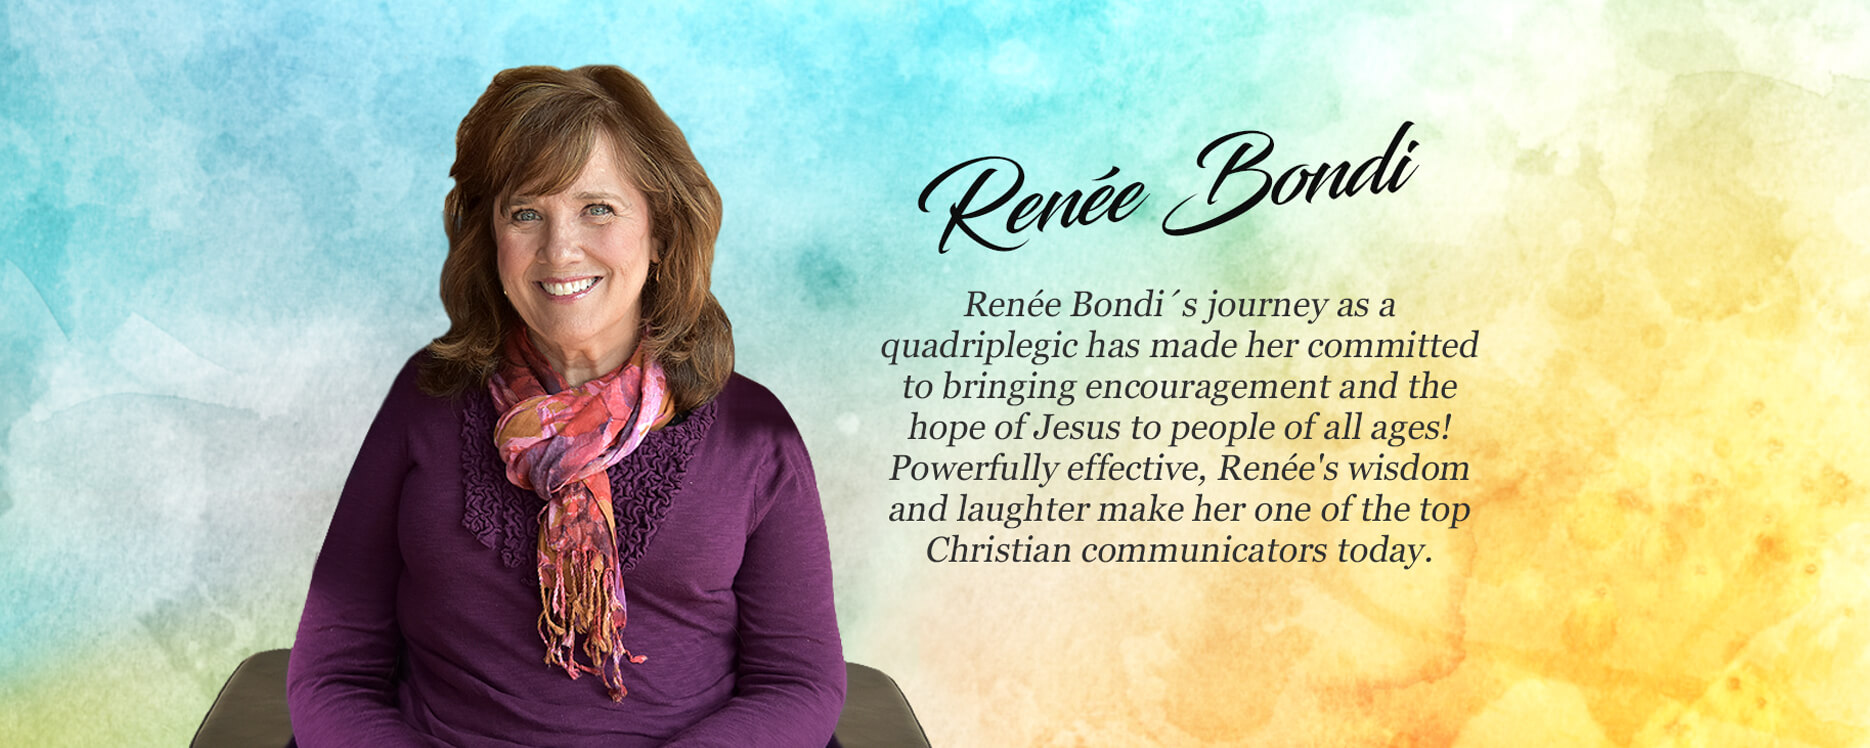 Renee Bondi's Journey